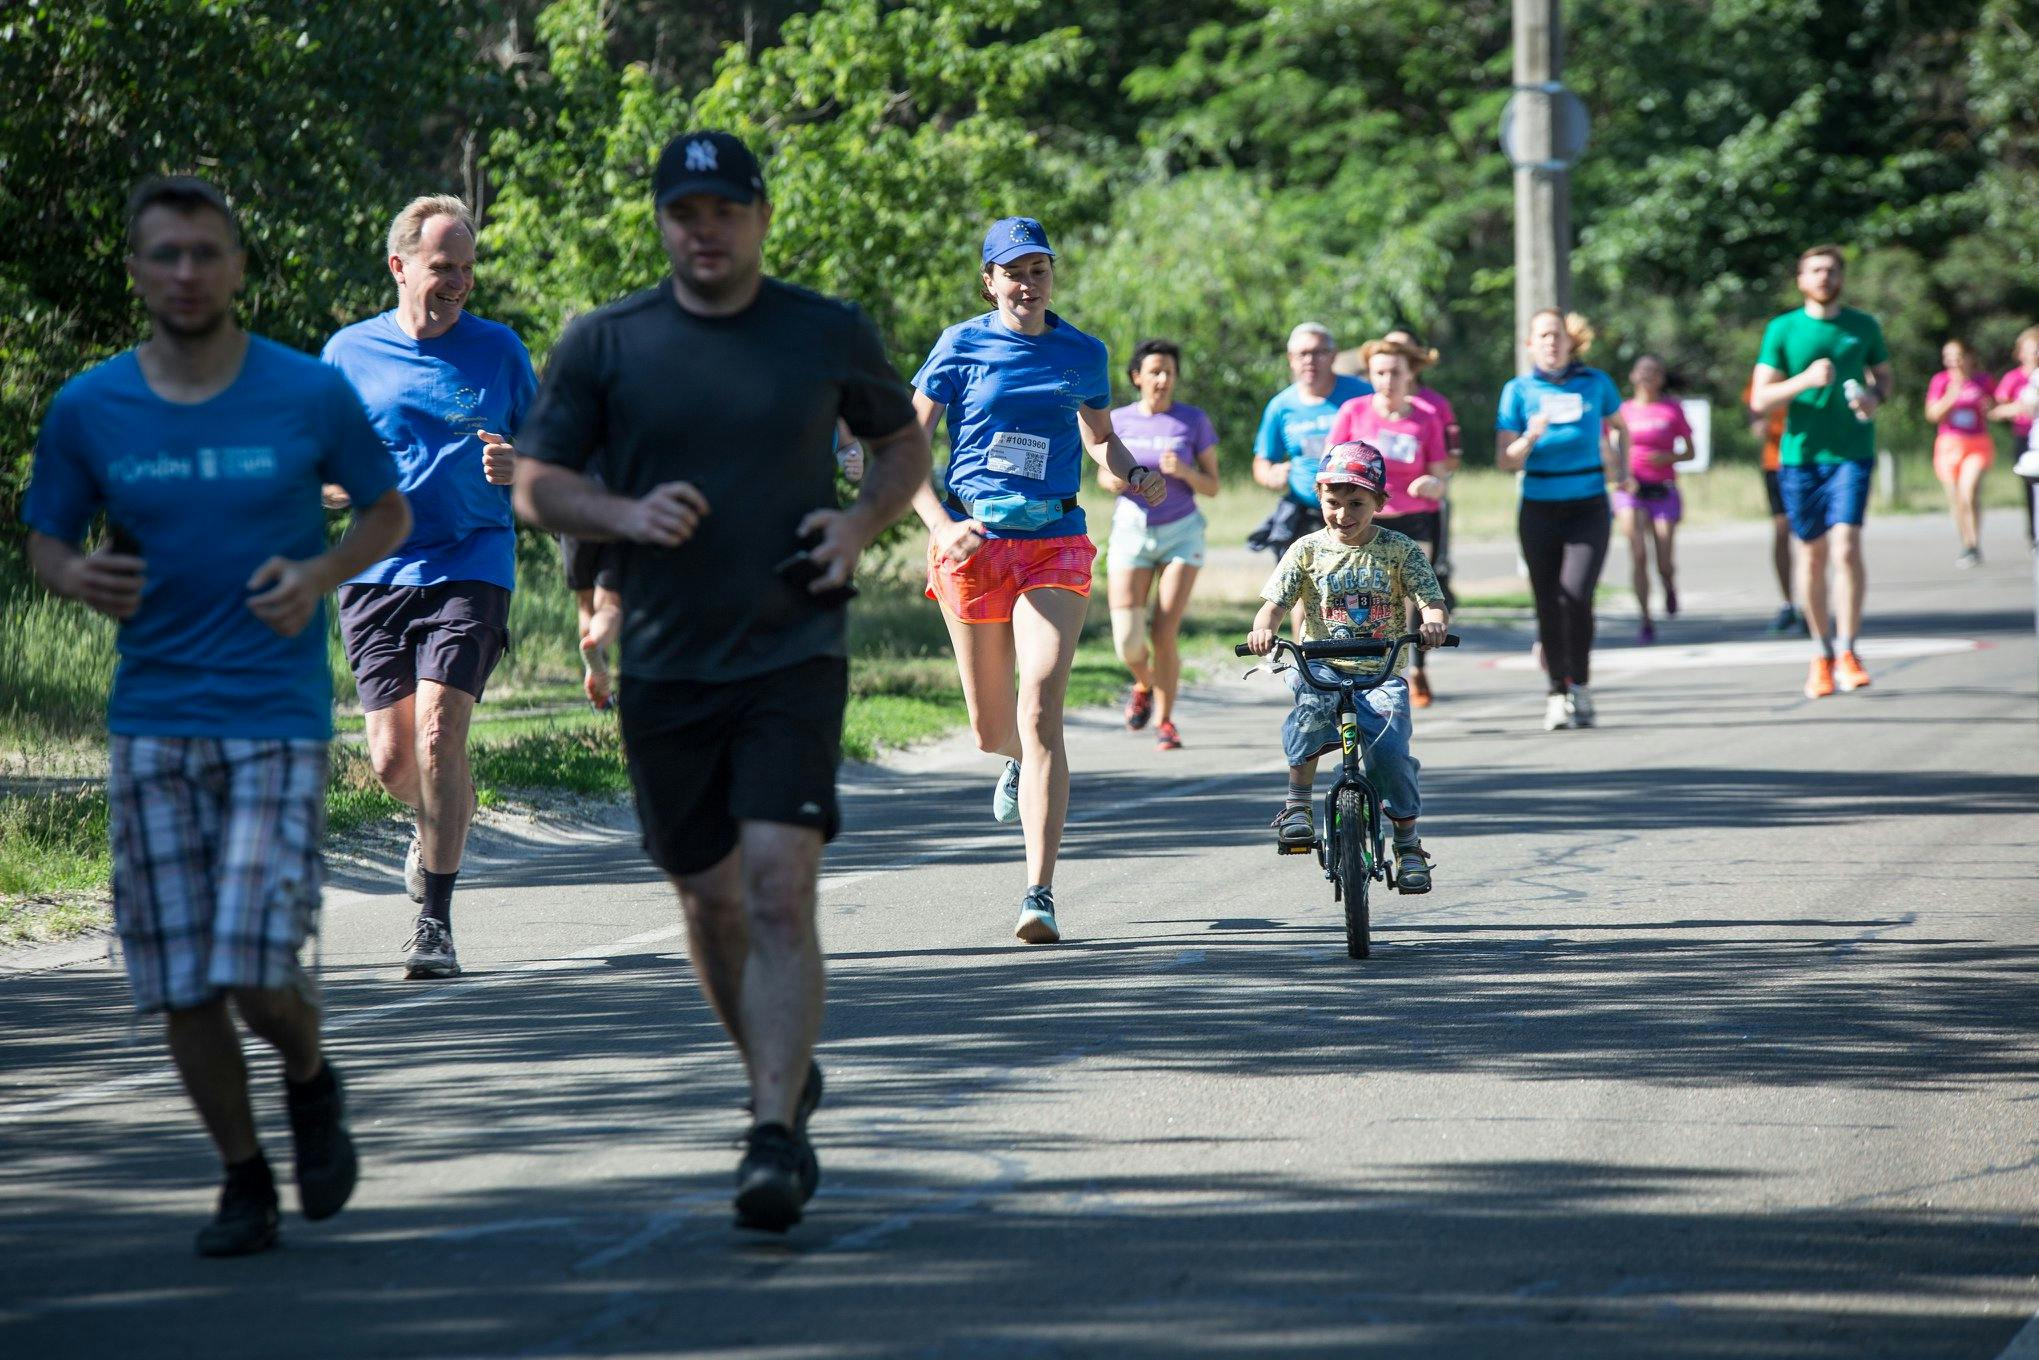 На зображенні - учасники забігу Runday під час пробіжки в 5 км, дорослі біжать, хлопчик біля мами їде на велосипеді